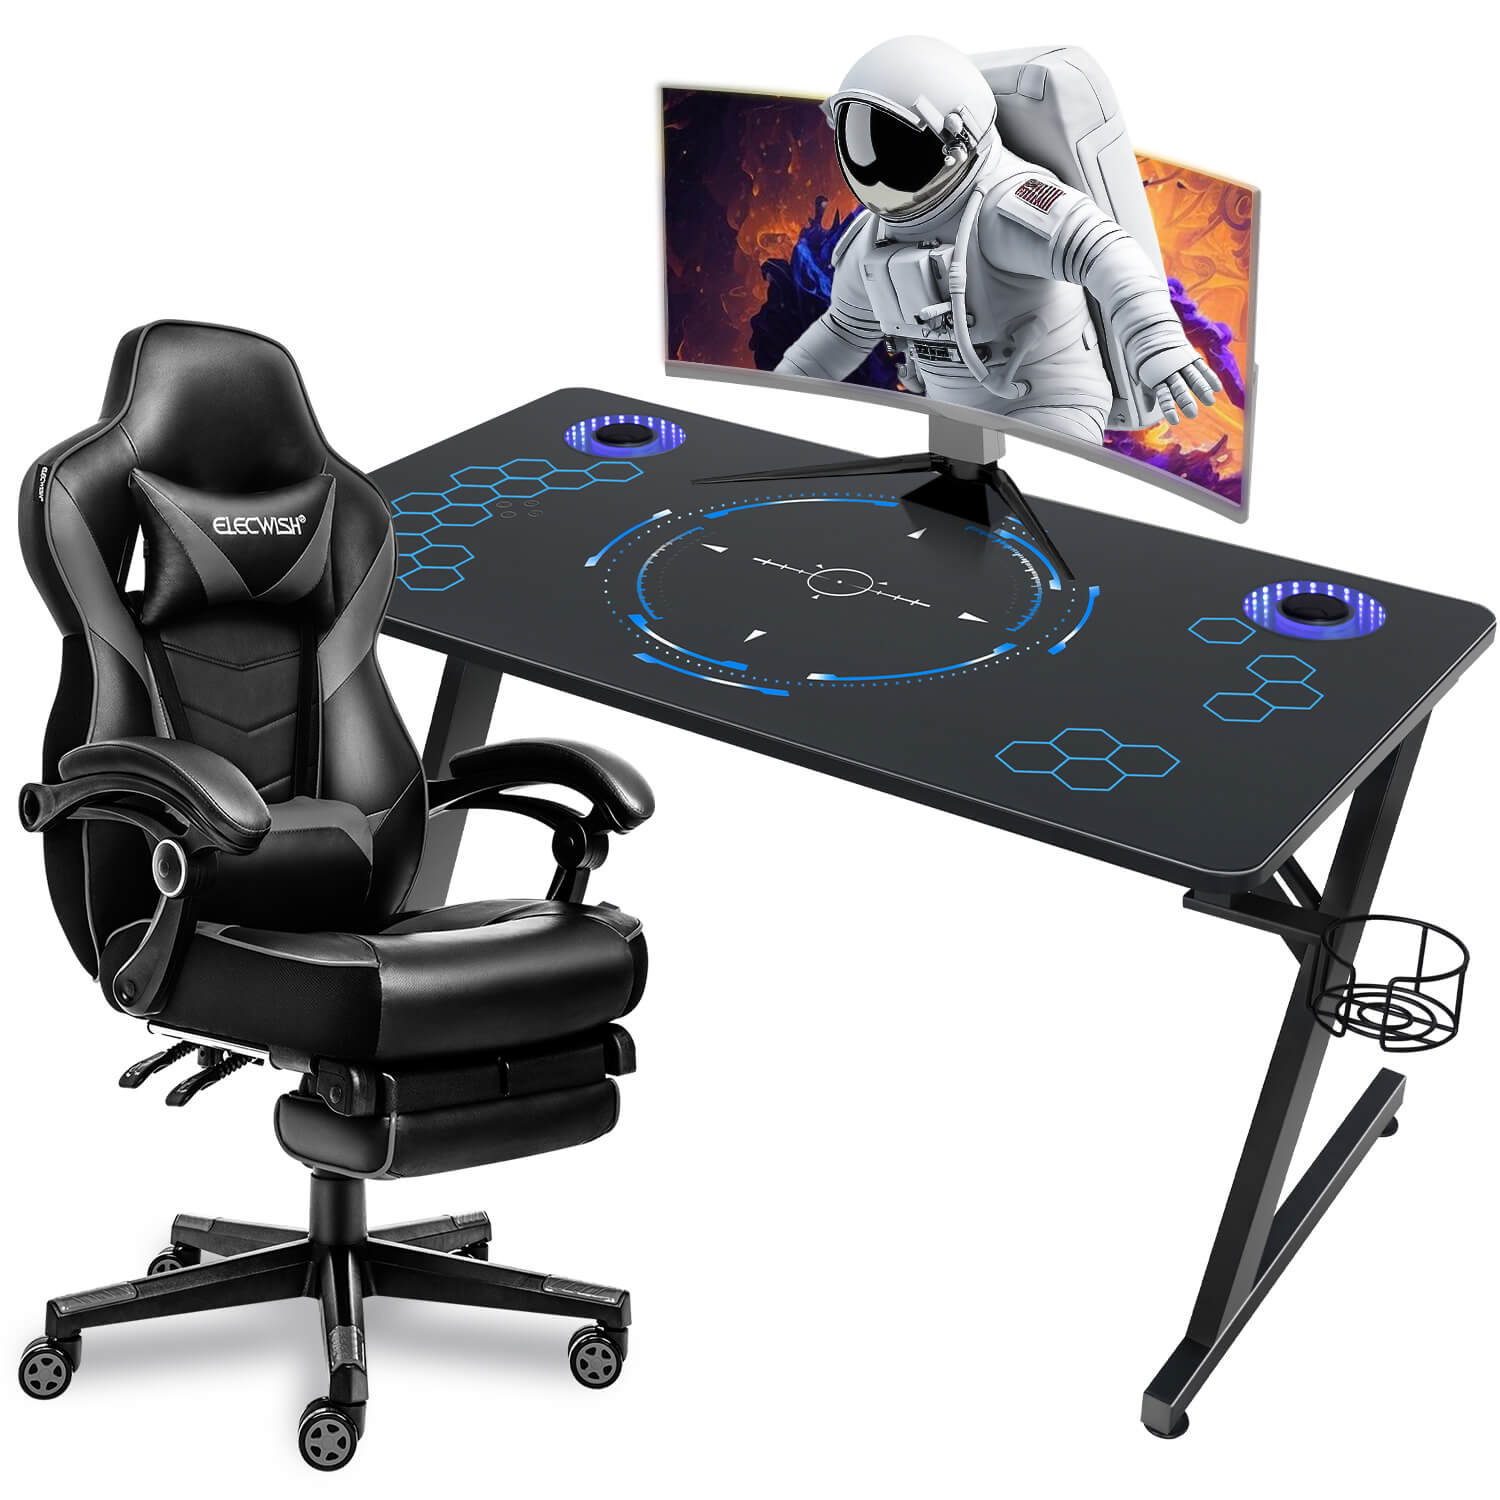 https://www.elecwish.com/cdn/shop/files/gaming-desk-oc125-gaming-chairs-grey-set-oc087gy.jpg?v=1700559175&width=1500